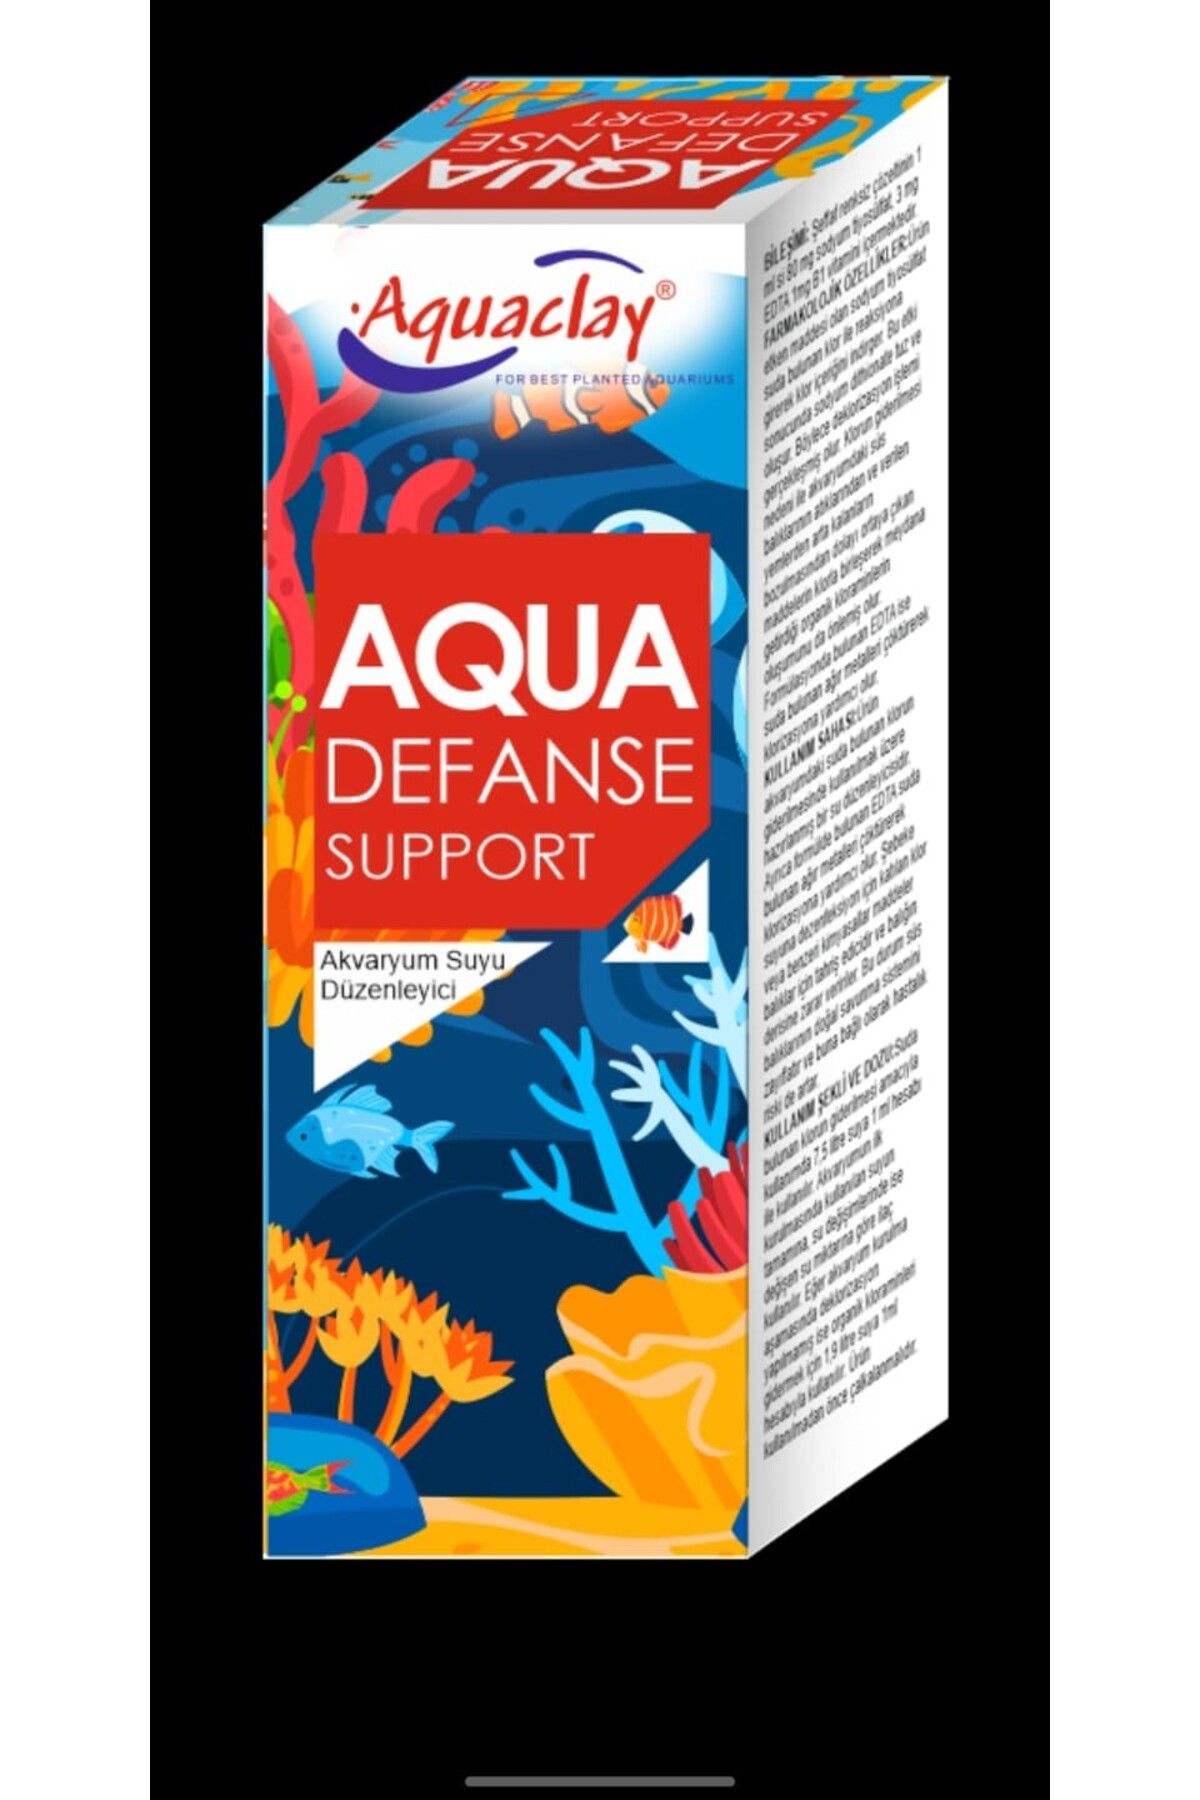 Aquaclay AQUA DEFANSE SUPPORT AKVARYUM SUYU DÜZENLEYİCİ